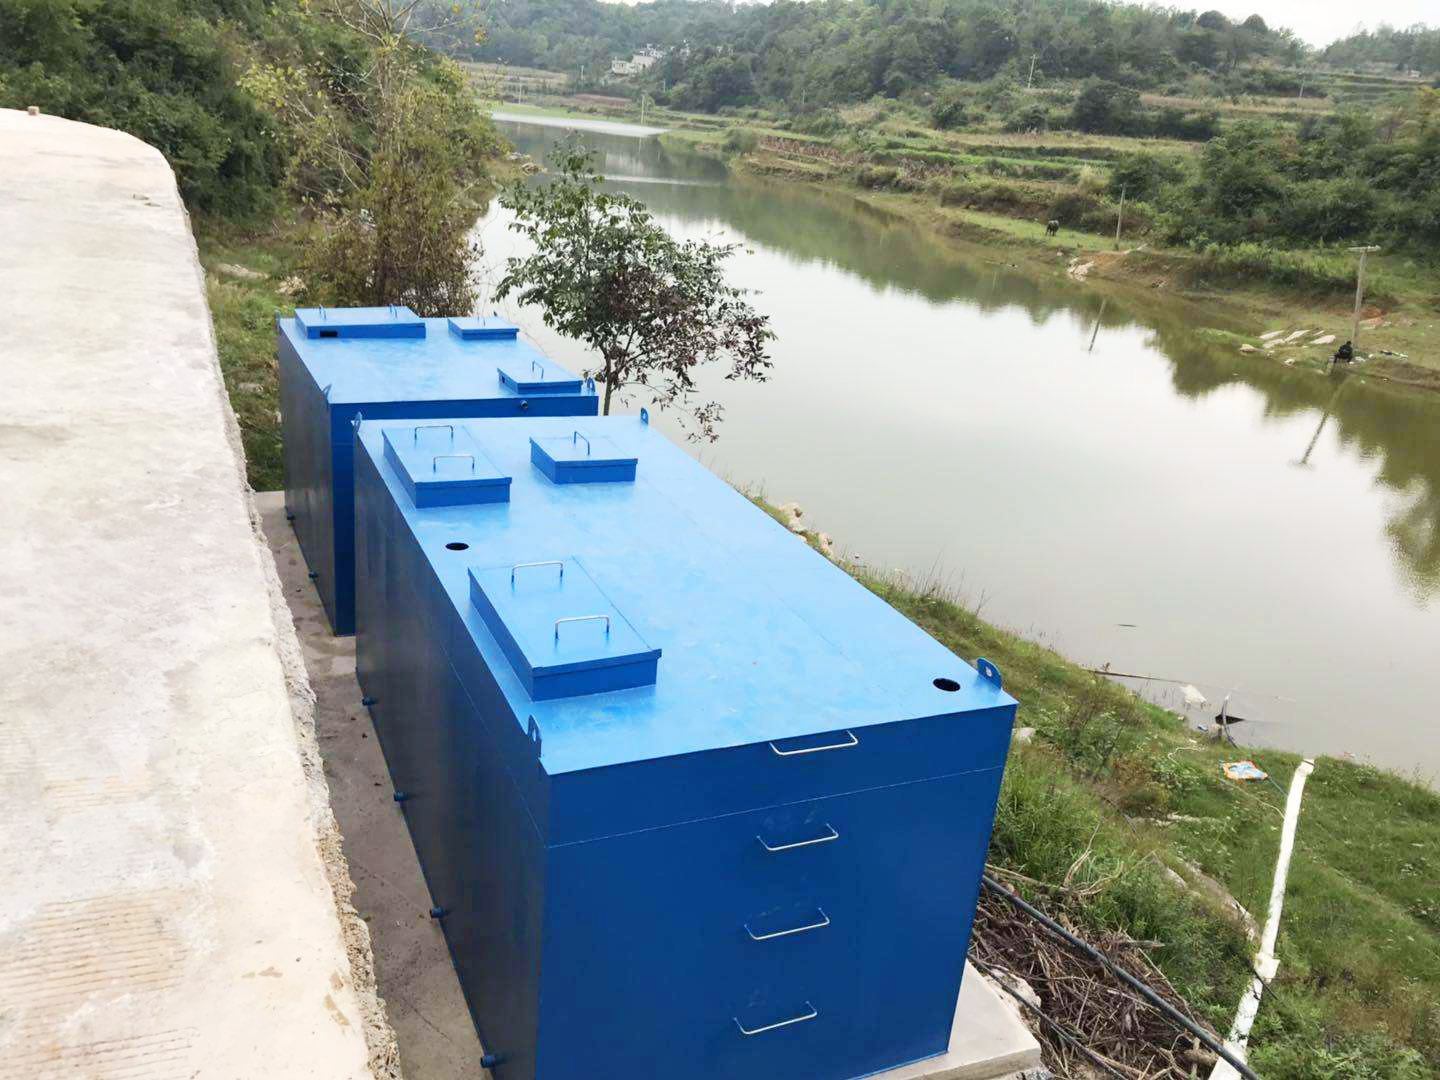 近几年来，通过对农村污水处理设备的普及使用，农村水环境治理得到有效改善